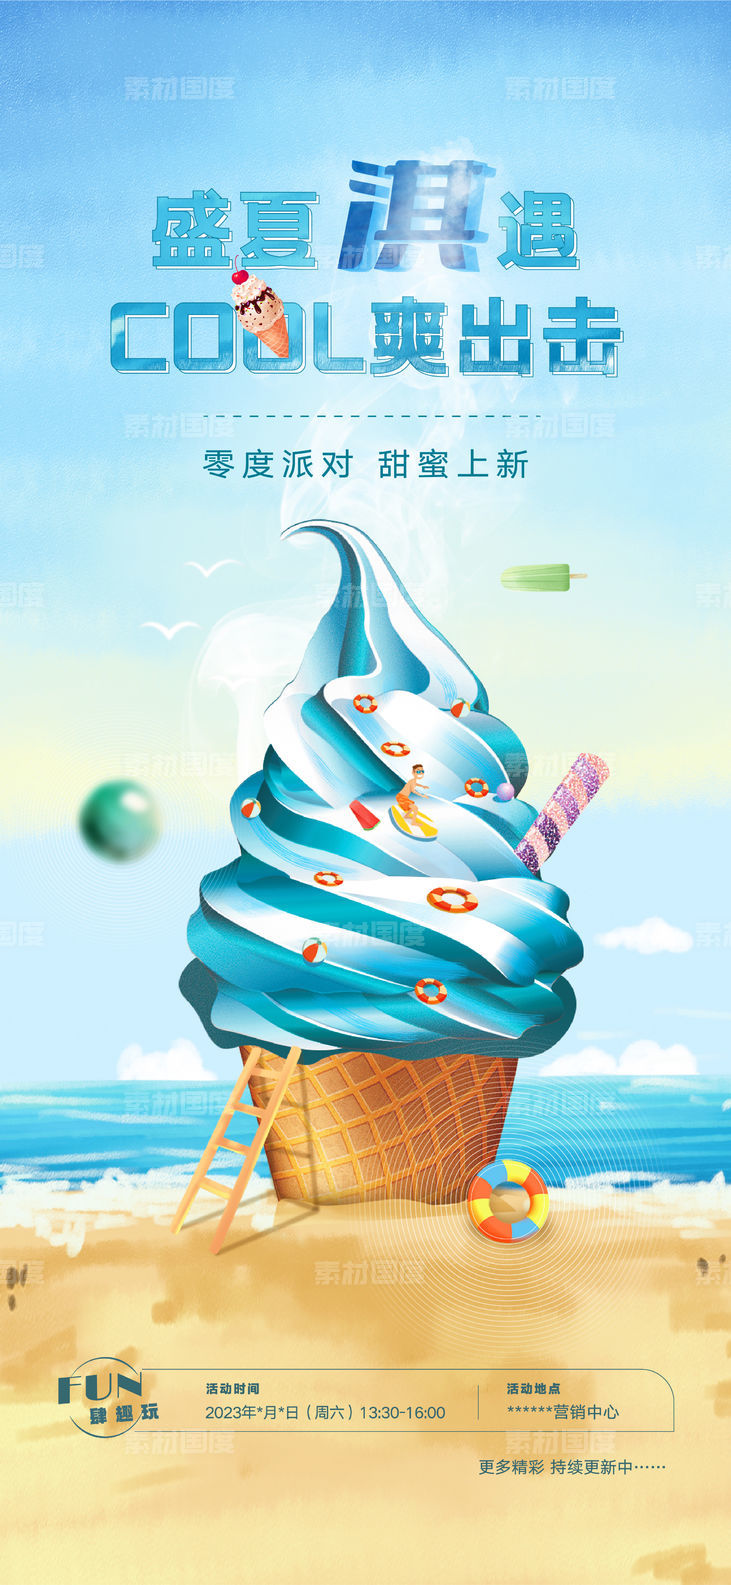 夏日冰淇淋暖场活动(psd+ai)